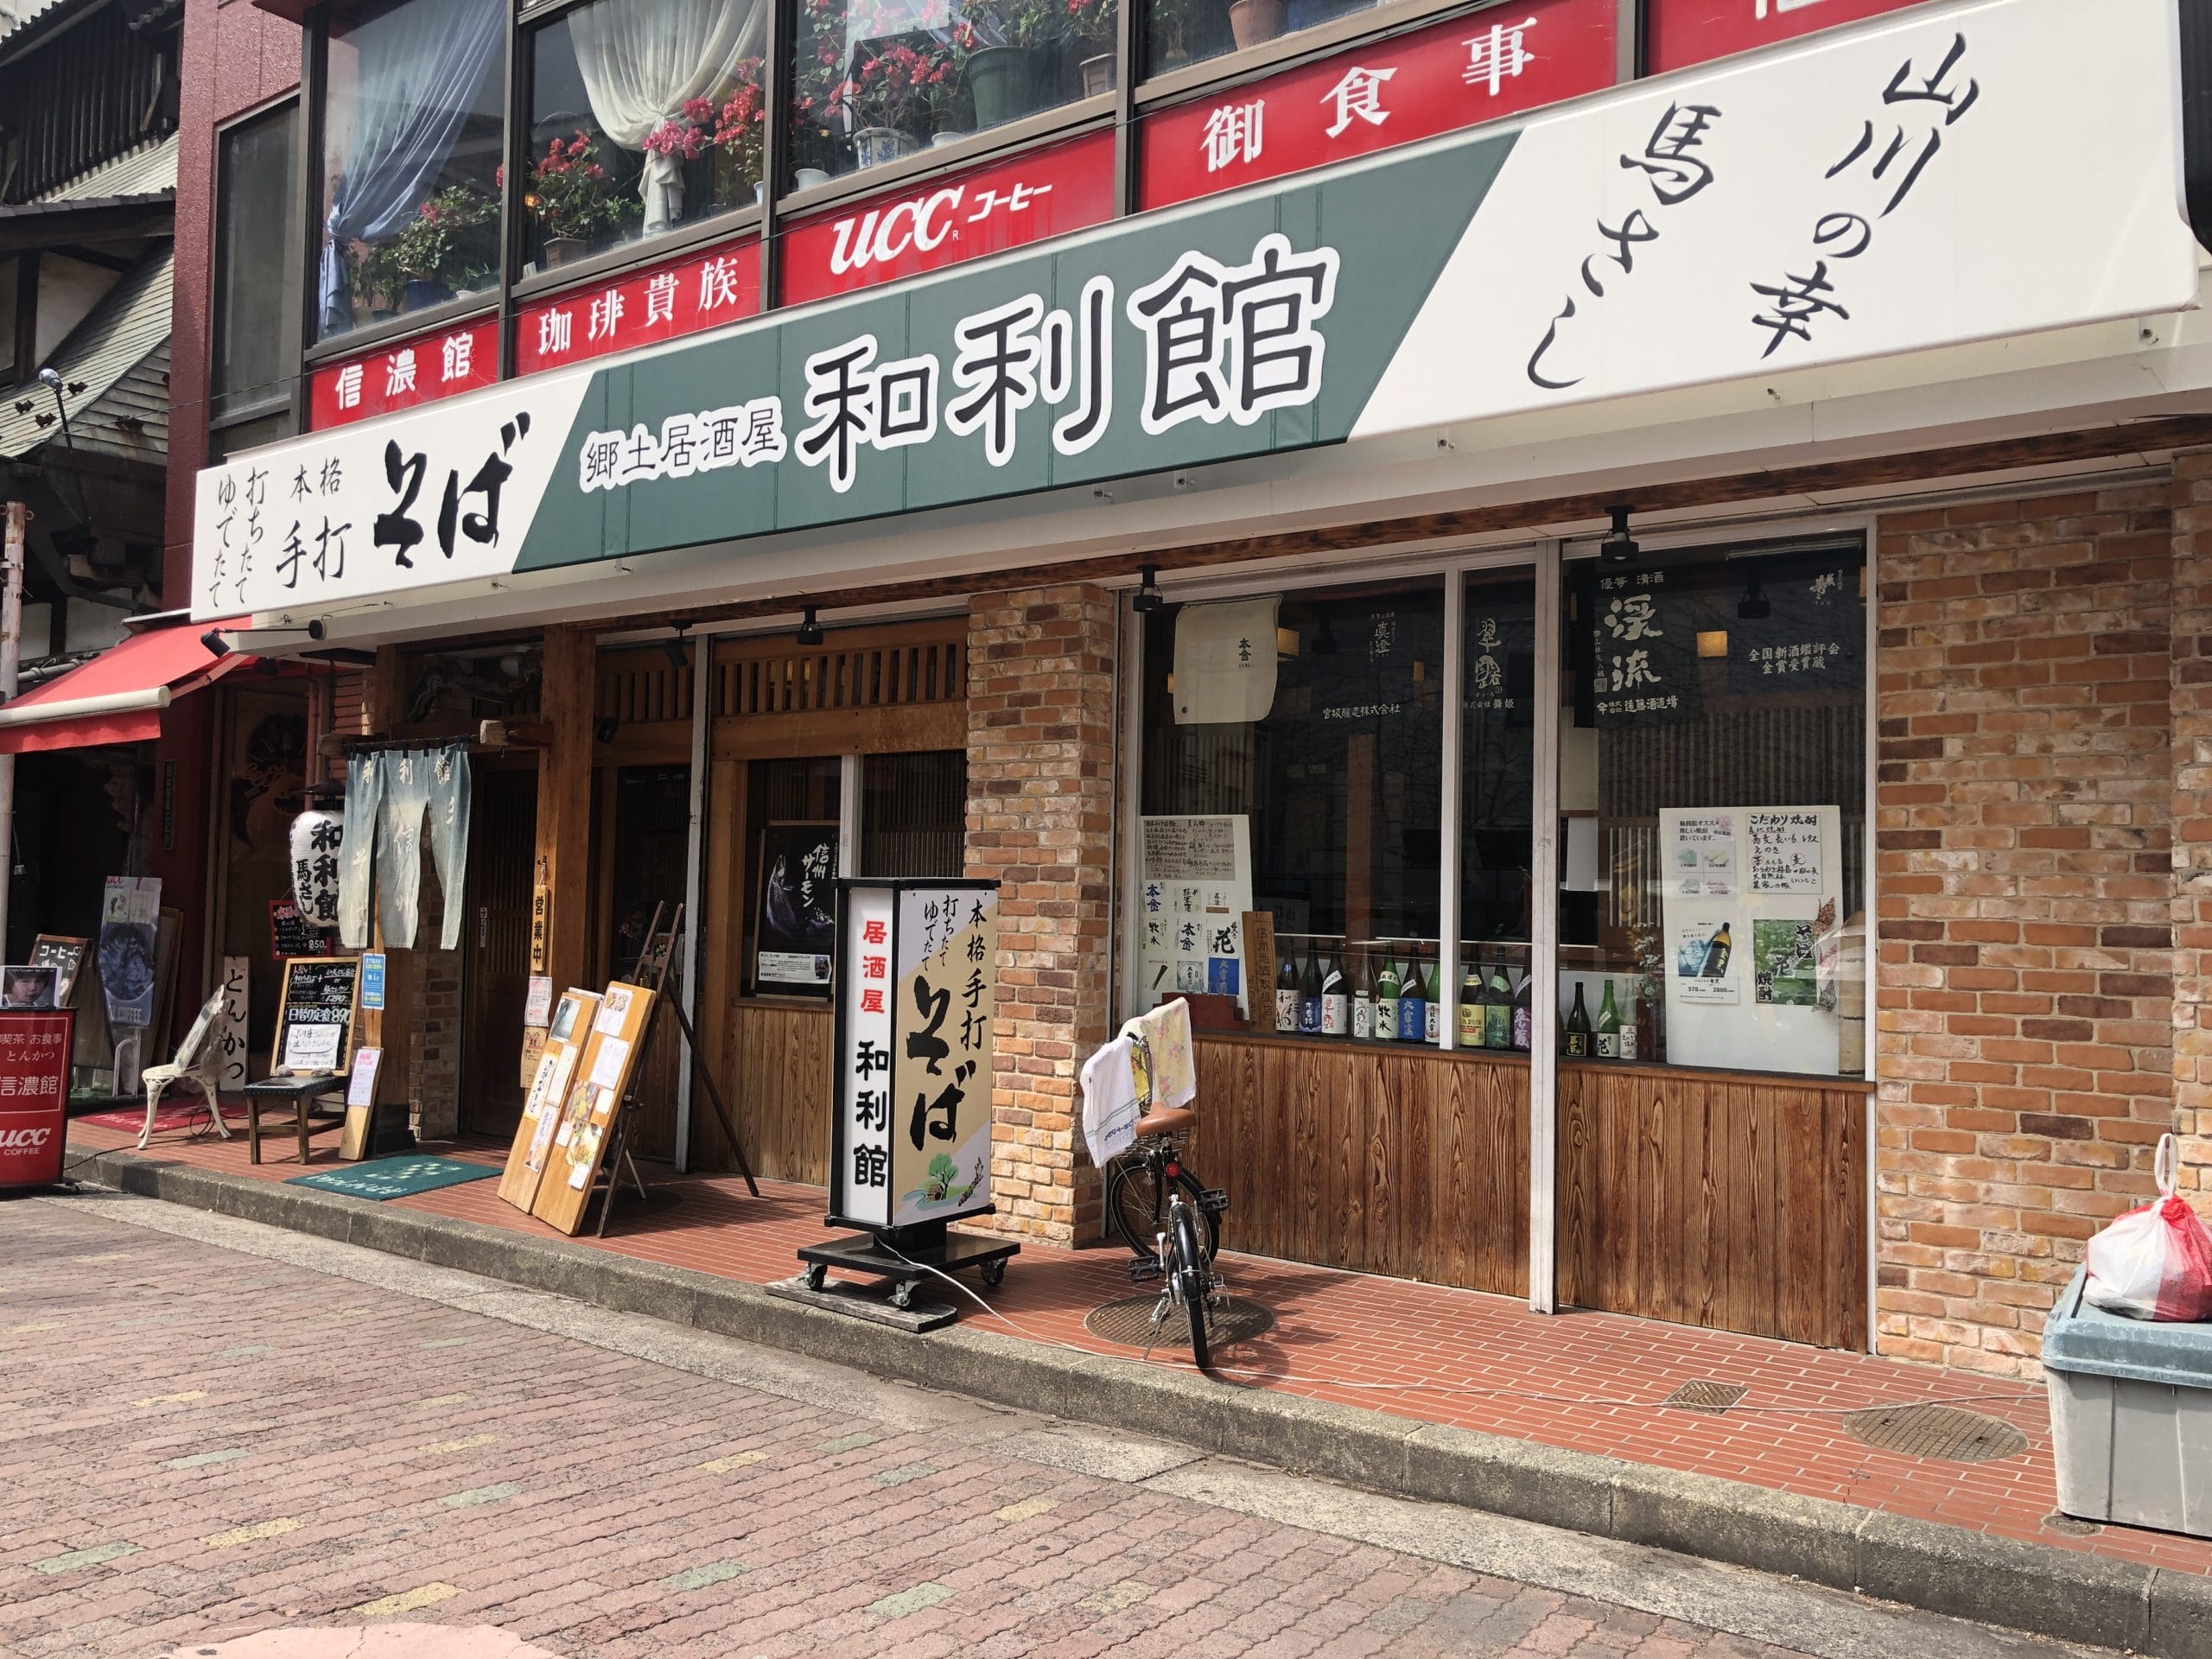 【松本市】手打ちそば&郷土居酒屋「和利館」は絶品メニューが揃うクチコミ評価がバツグンの名店です。